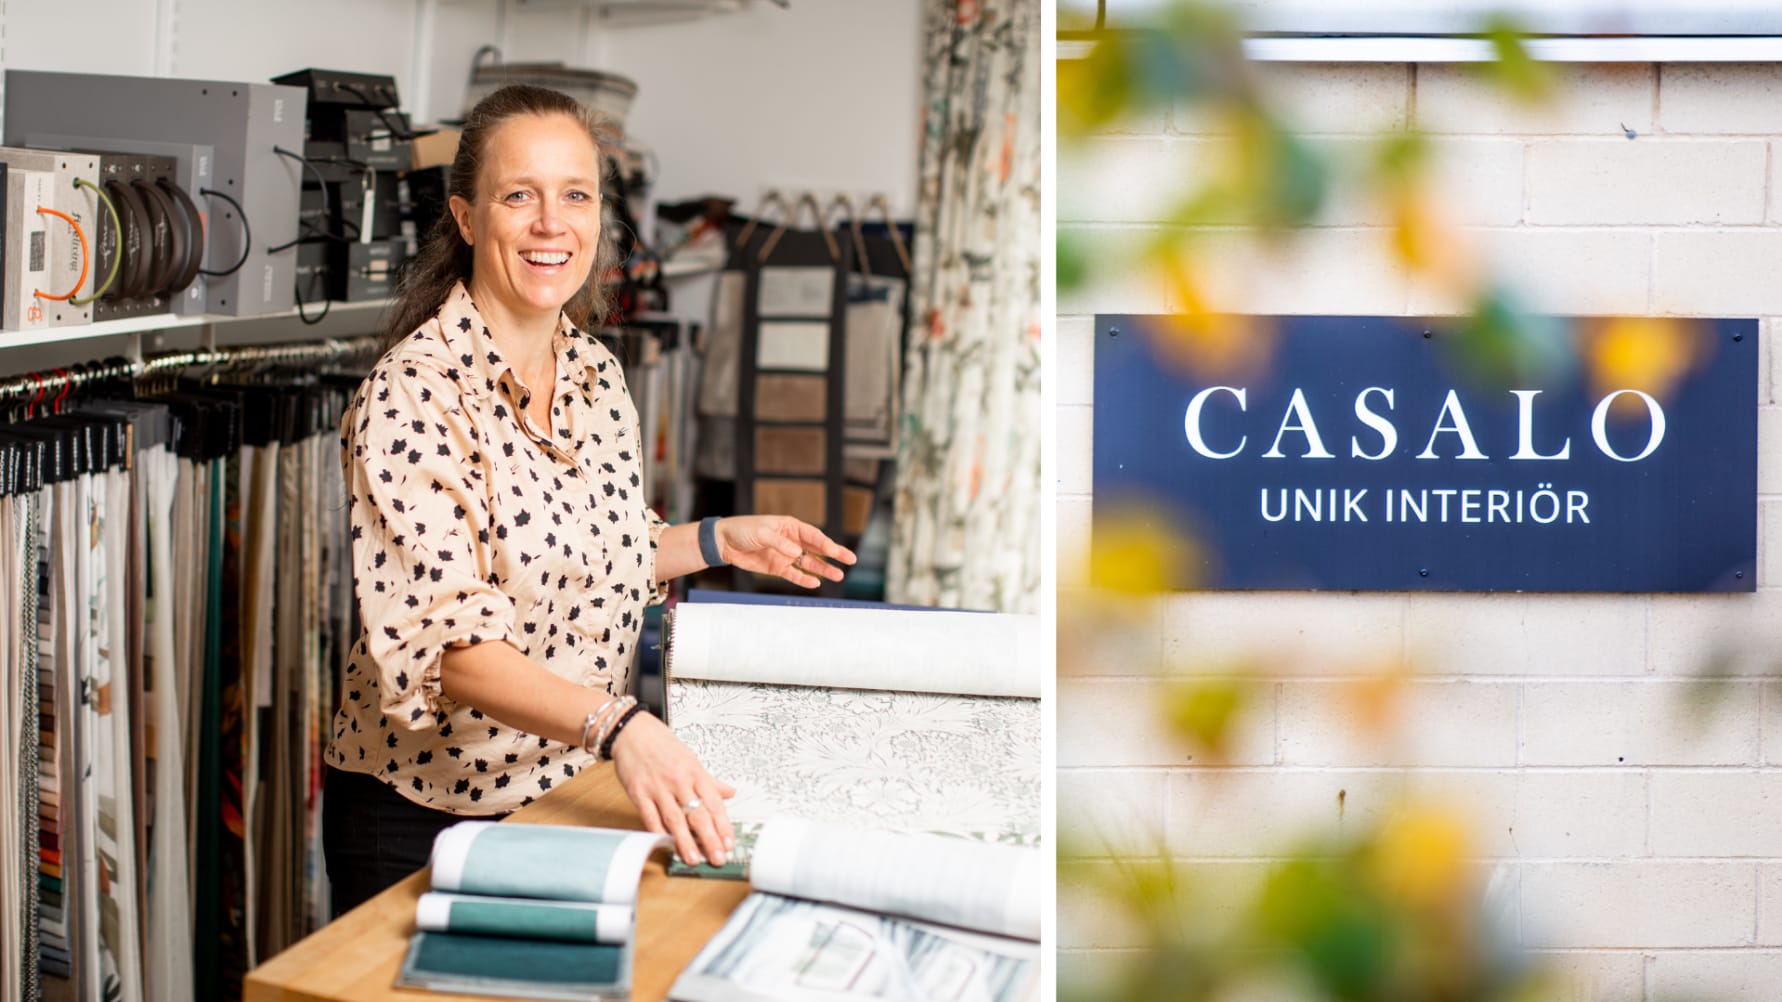 Casalos flytt till Limhamns företagscenter blev starten på en ny marknad av lojala kunder